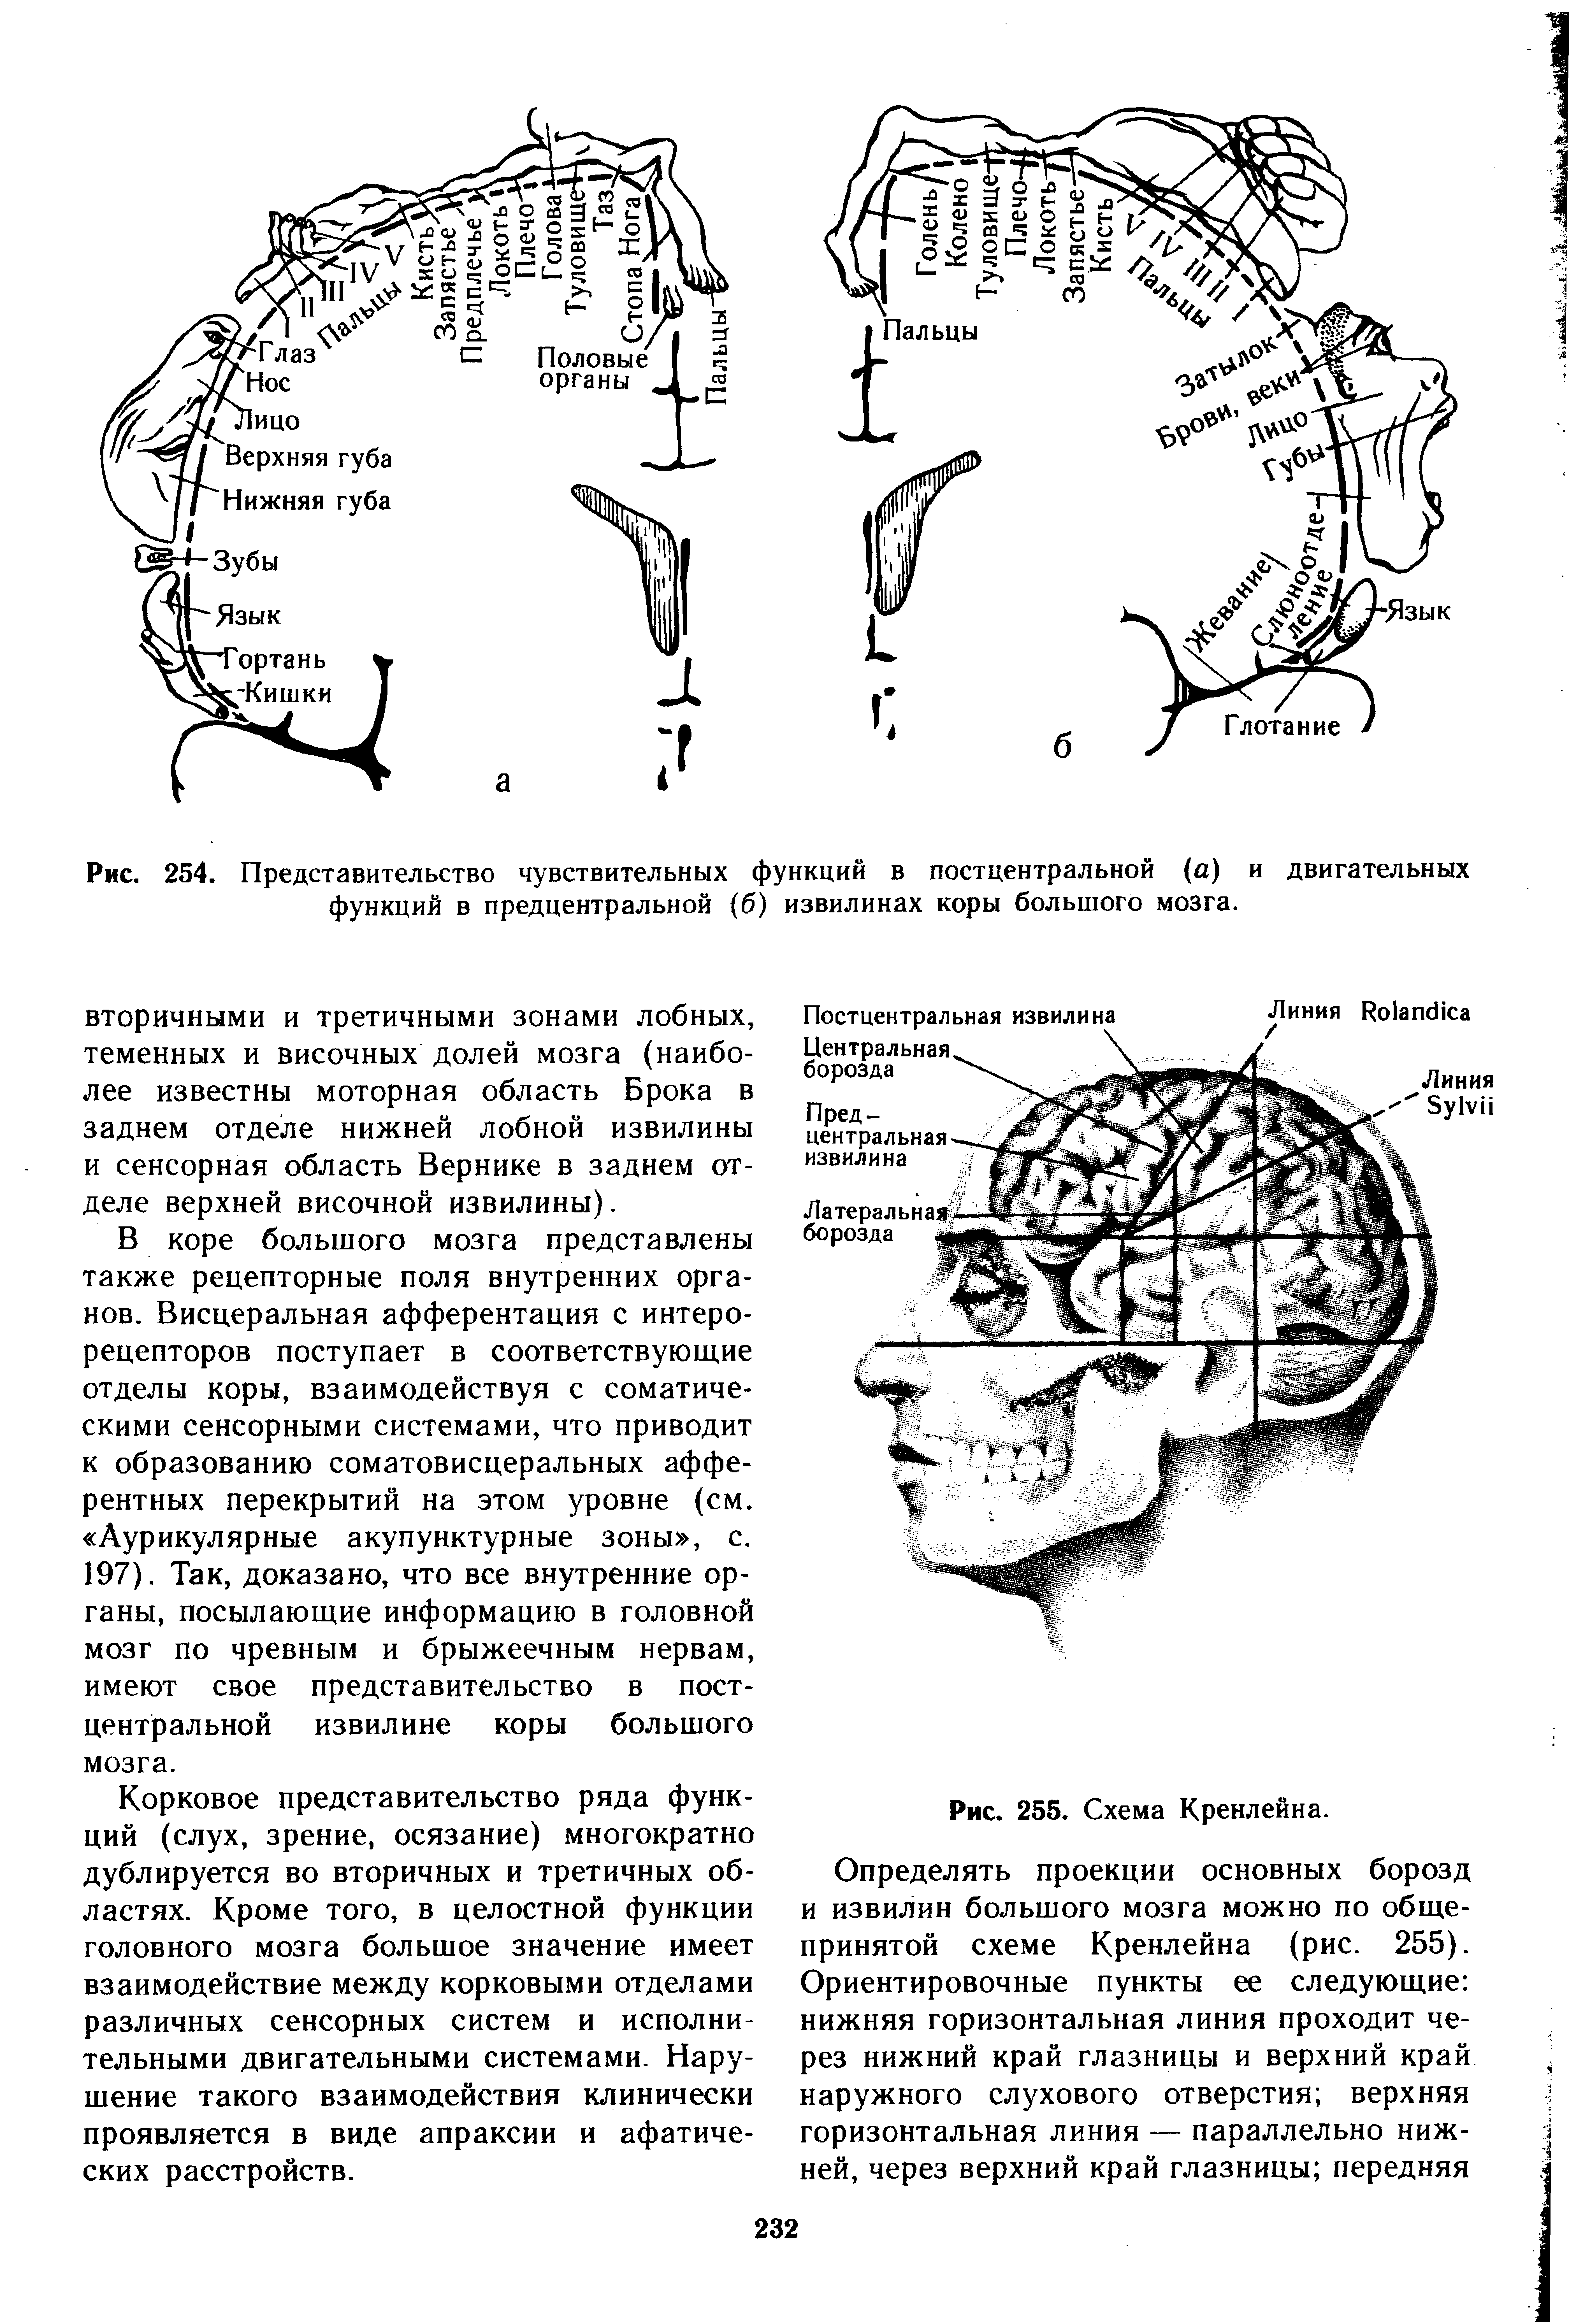 Рис. 254. Представительство чувствительных функций в постцентральной (а) и двигательных функций в предцентральной (б) извилинах коры большого мозга.